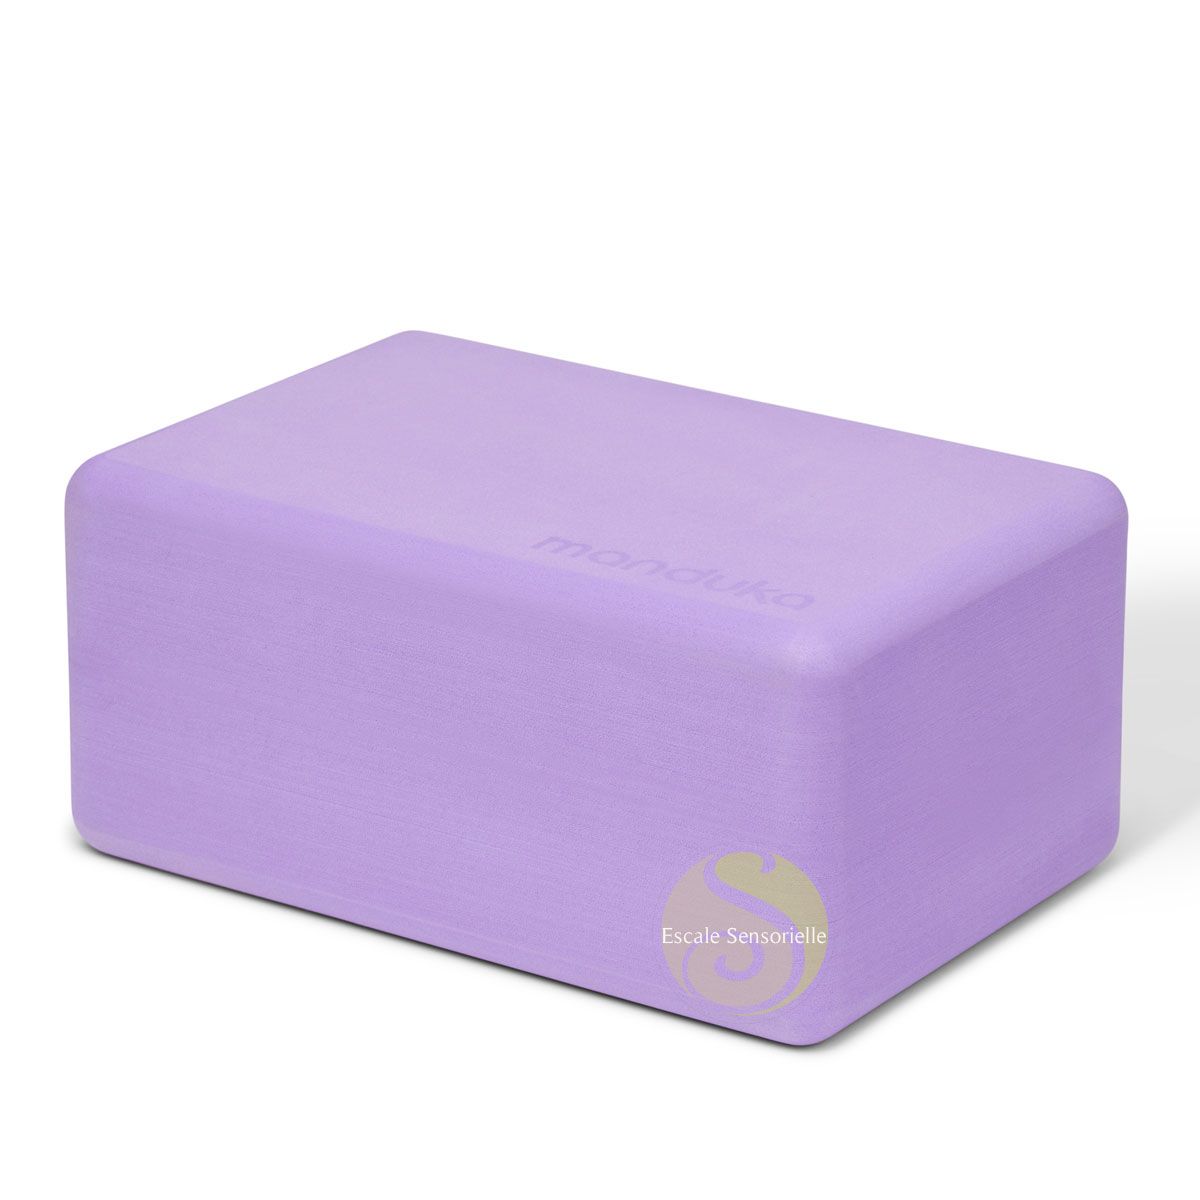 Brique de yoga foam paisley purple Manduka grand choix d'accessoire